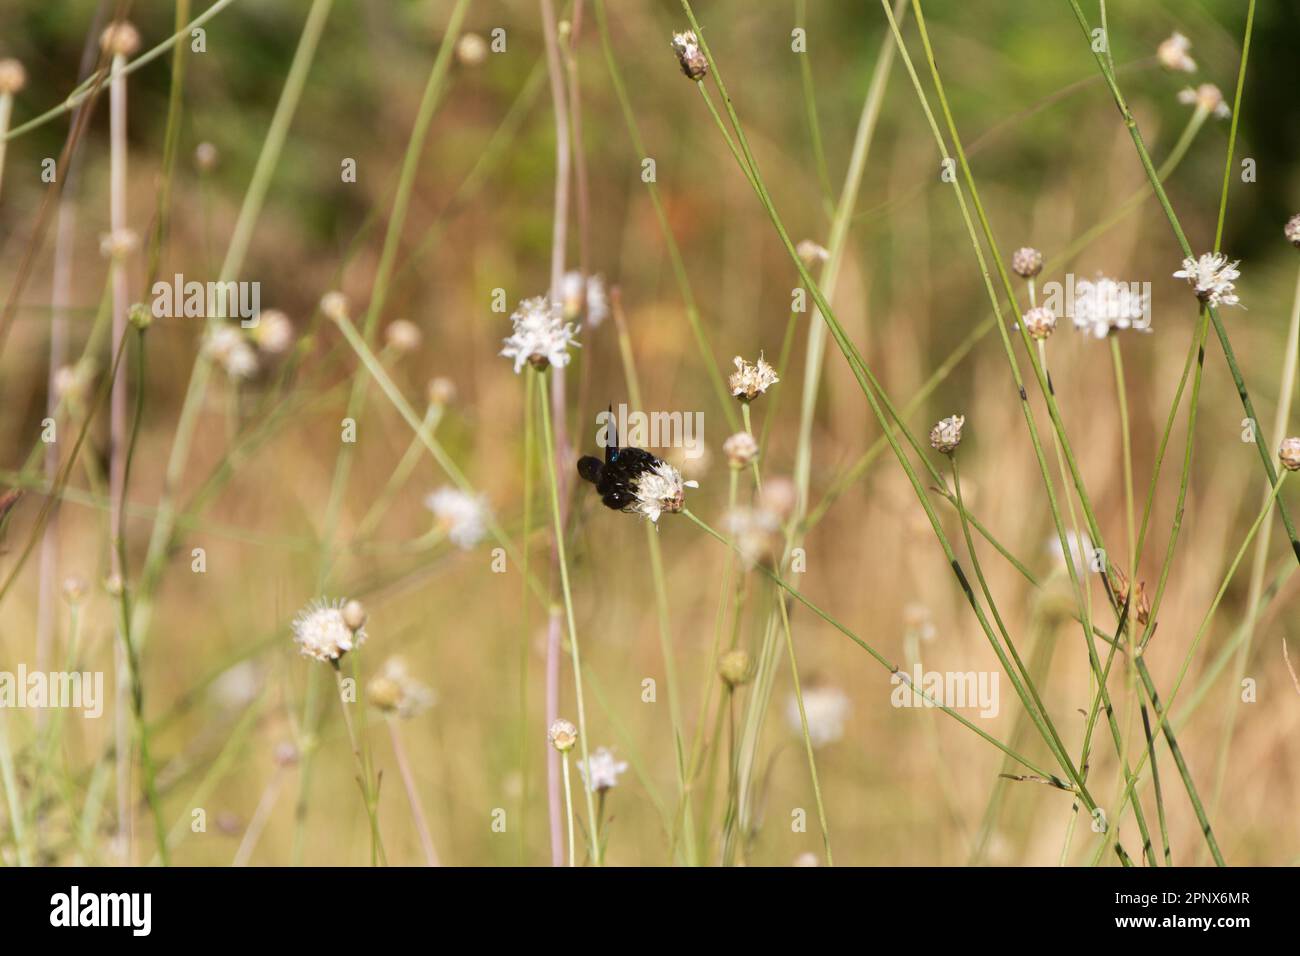 Nahaufnahme einer schwarzen Hummel, die eine kleine weiße Blume bestäubt, umgeben von grünen Stämmen. Stockfoto